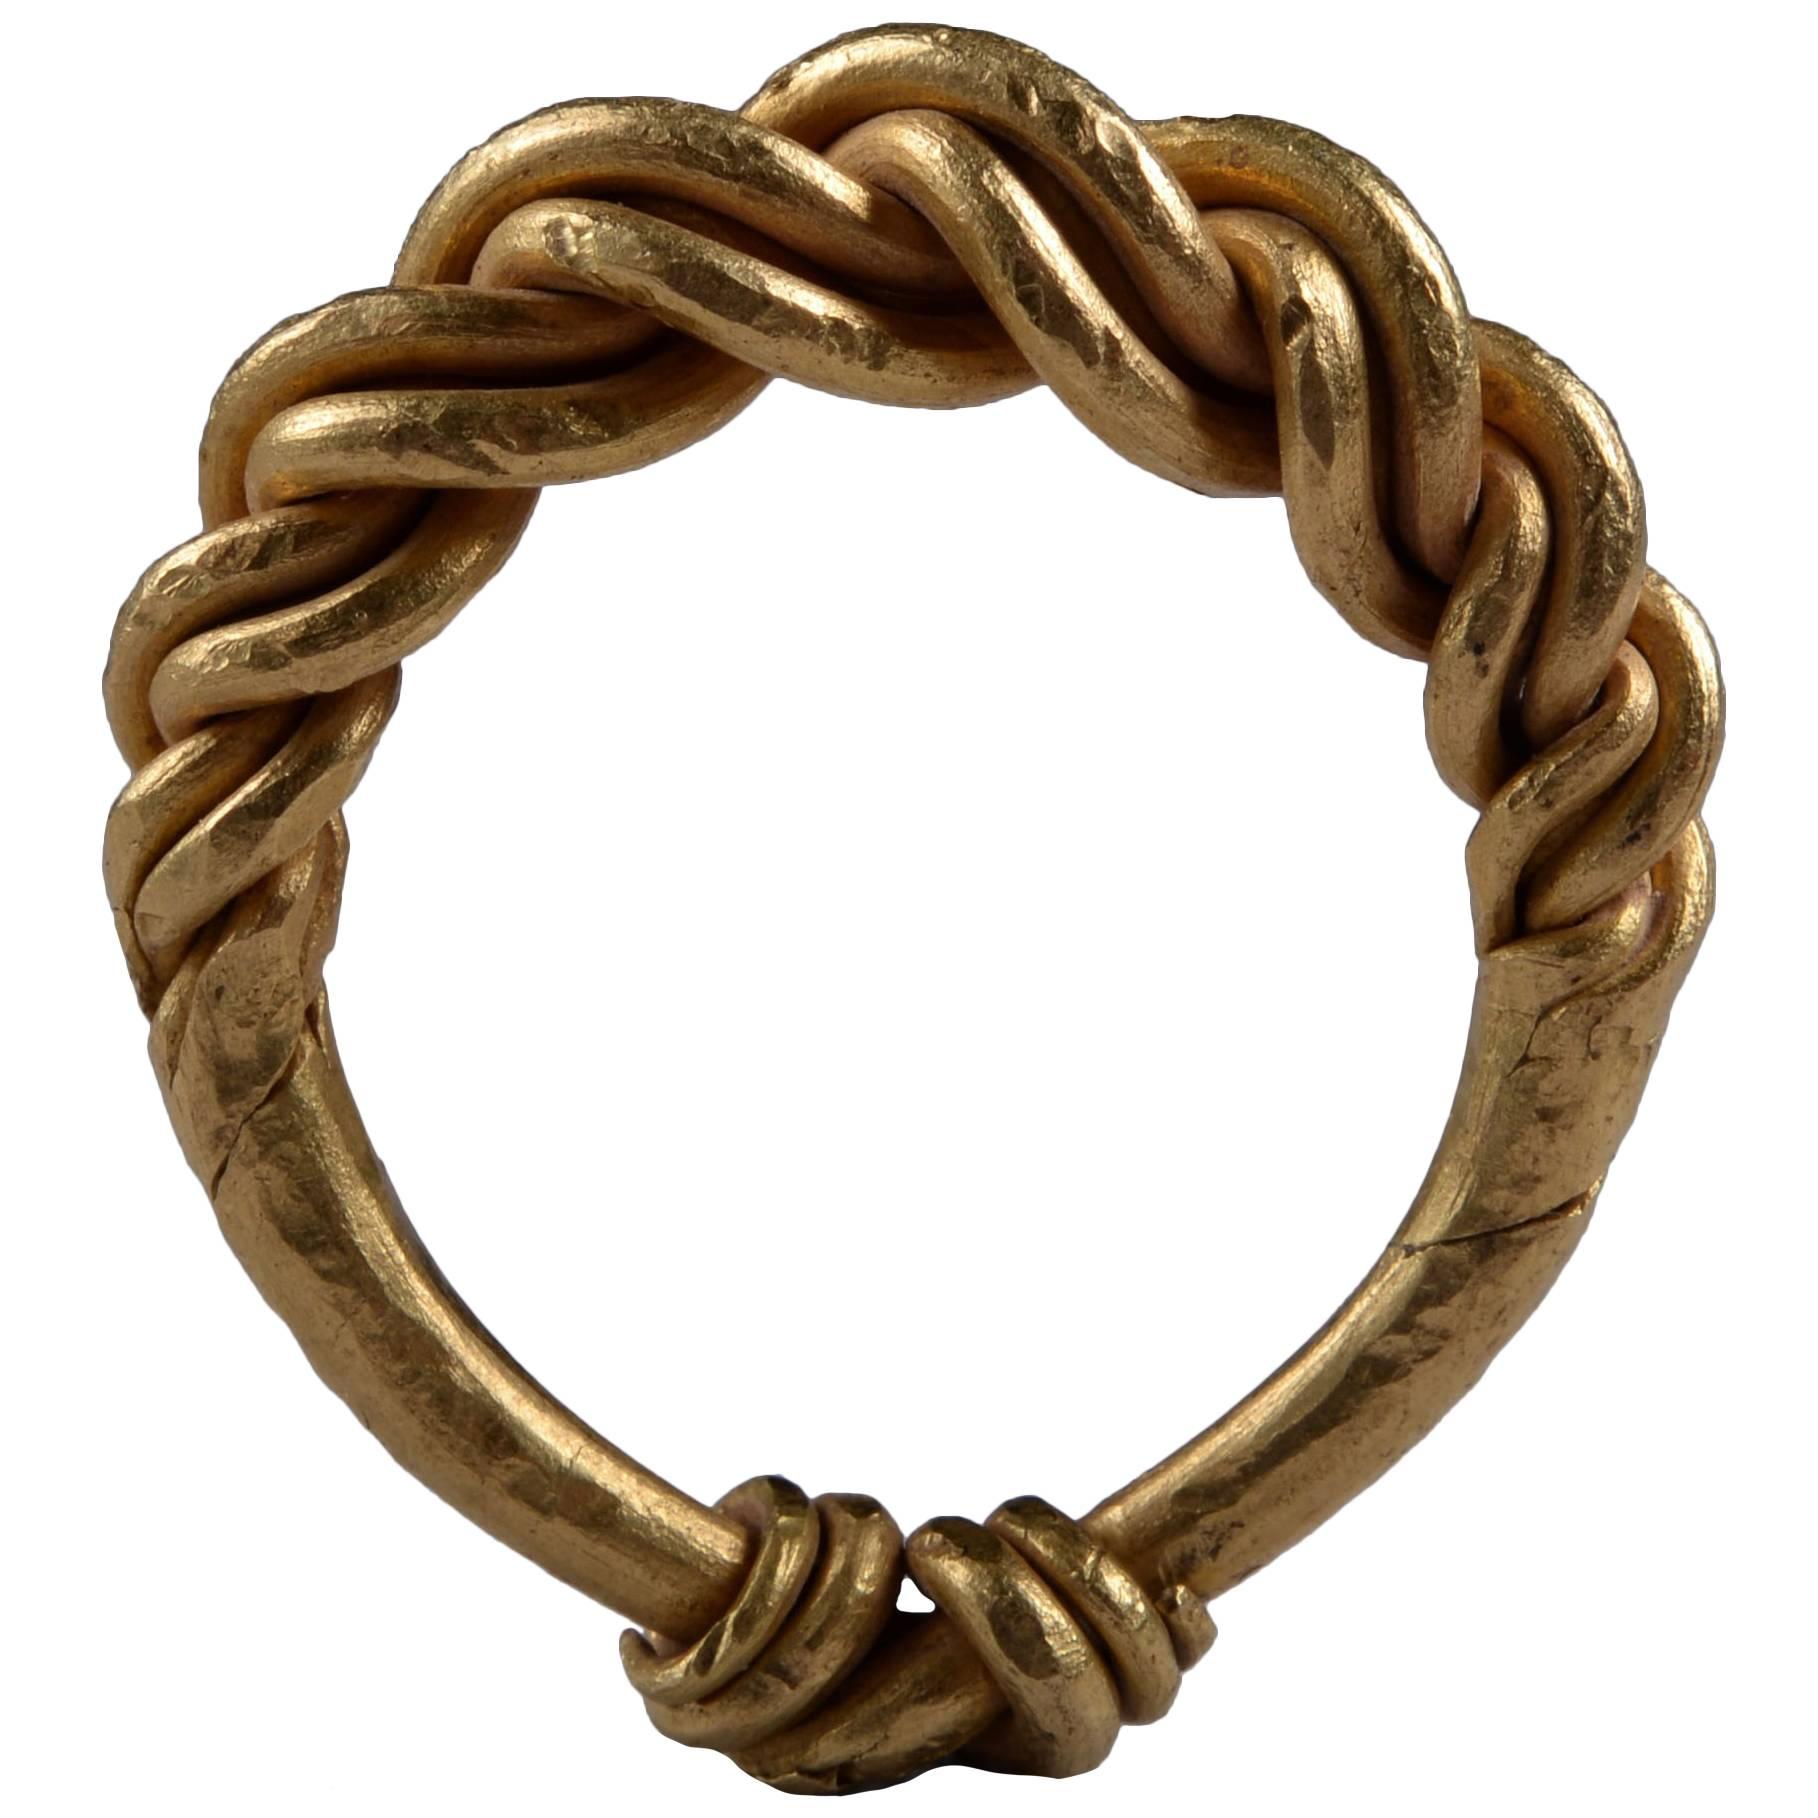 Ancient Gold Viking Ring, 950 AD